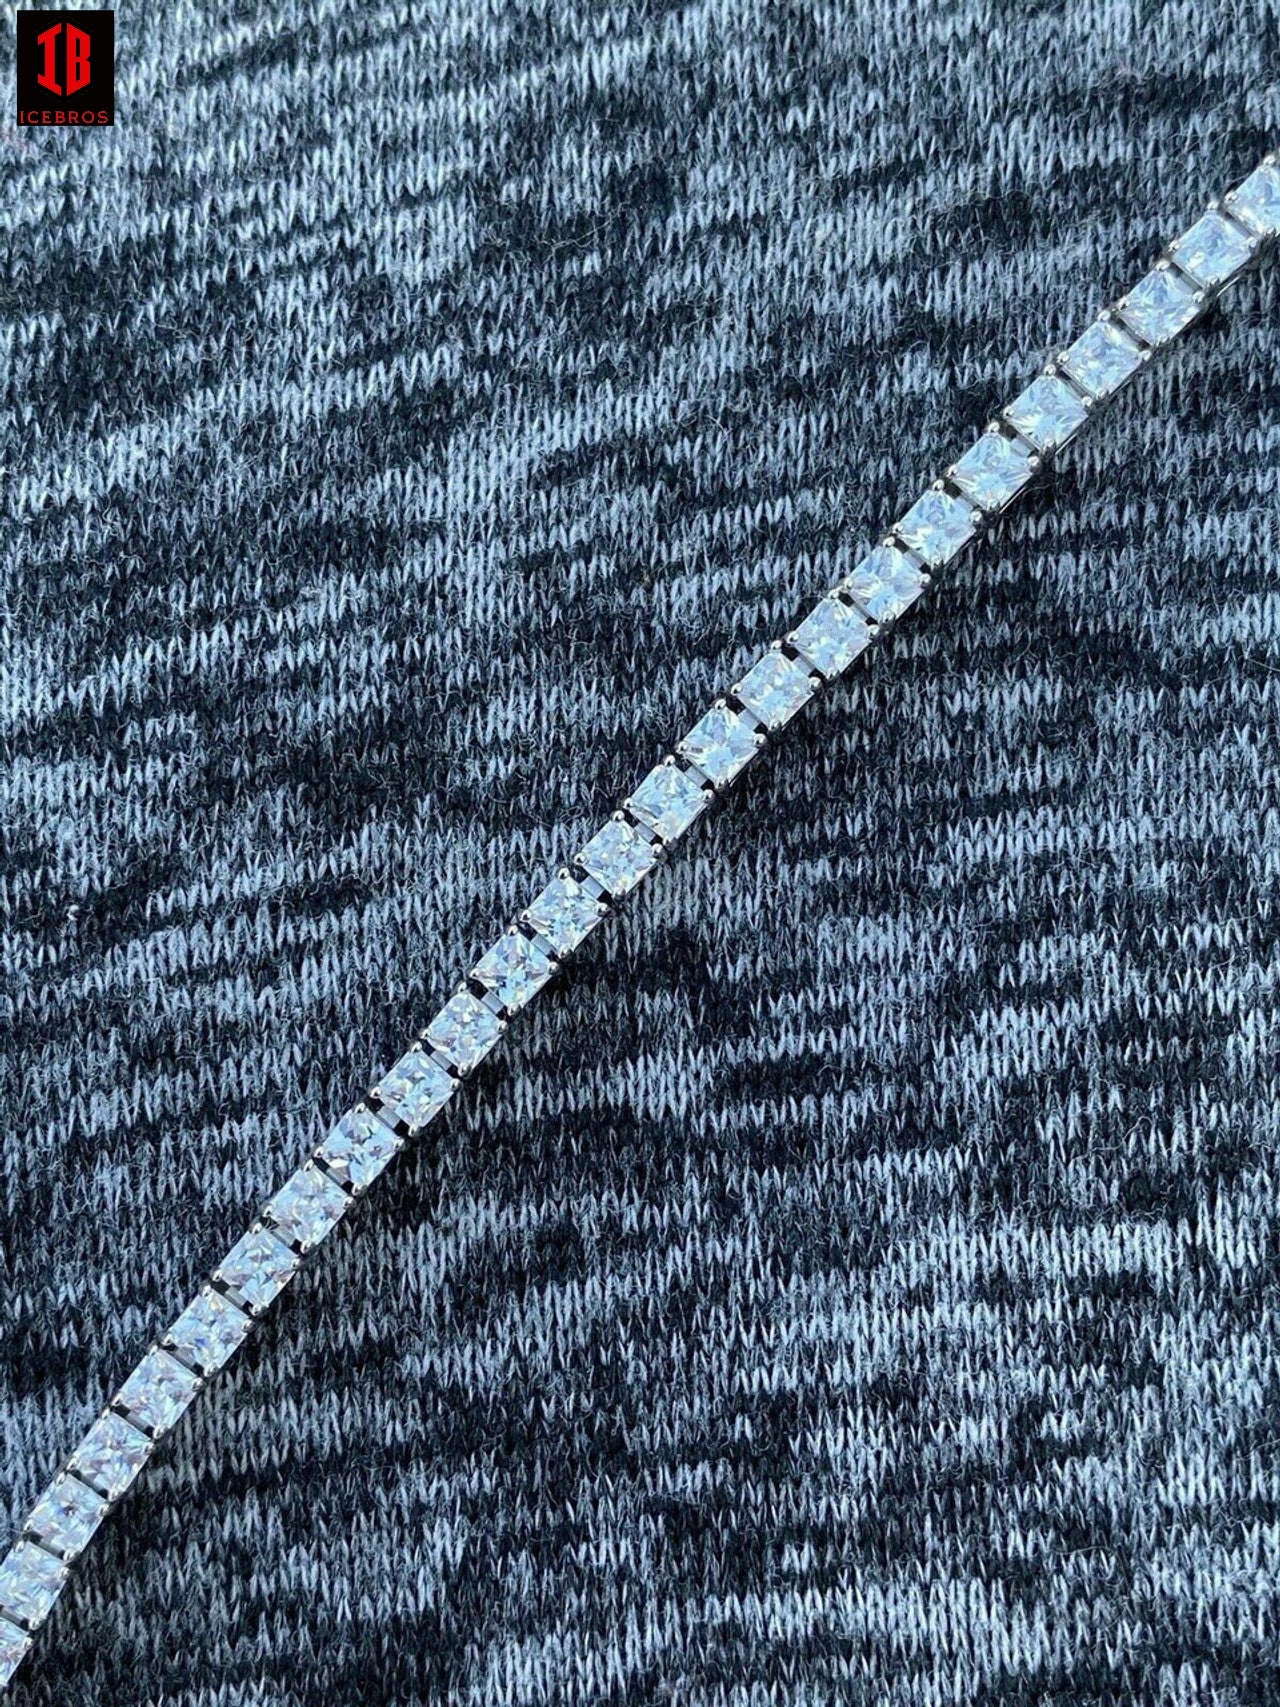 Tennis Bracelet Real 925 Sterling Silver Single Row Princess Square Iced Diamond